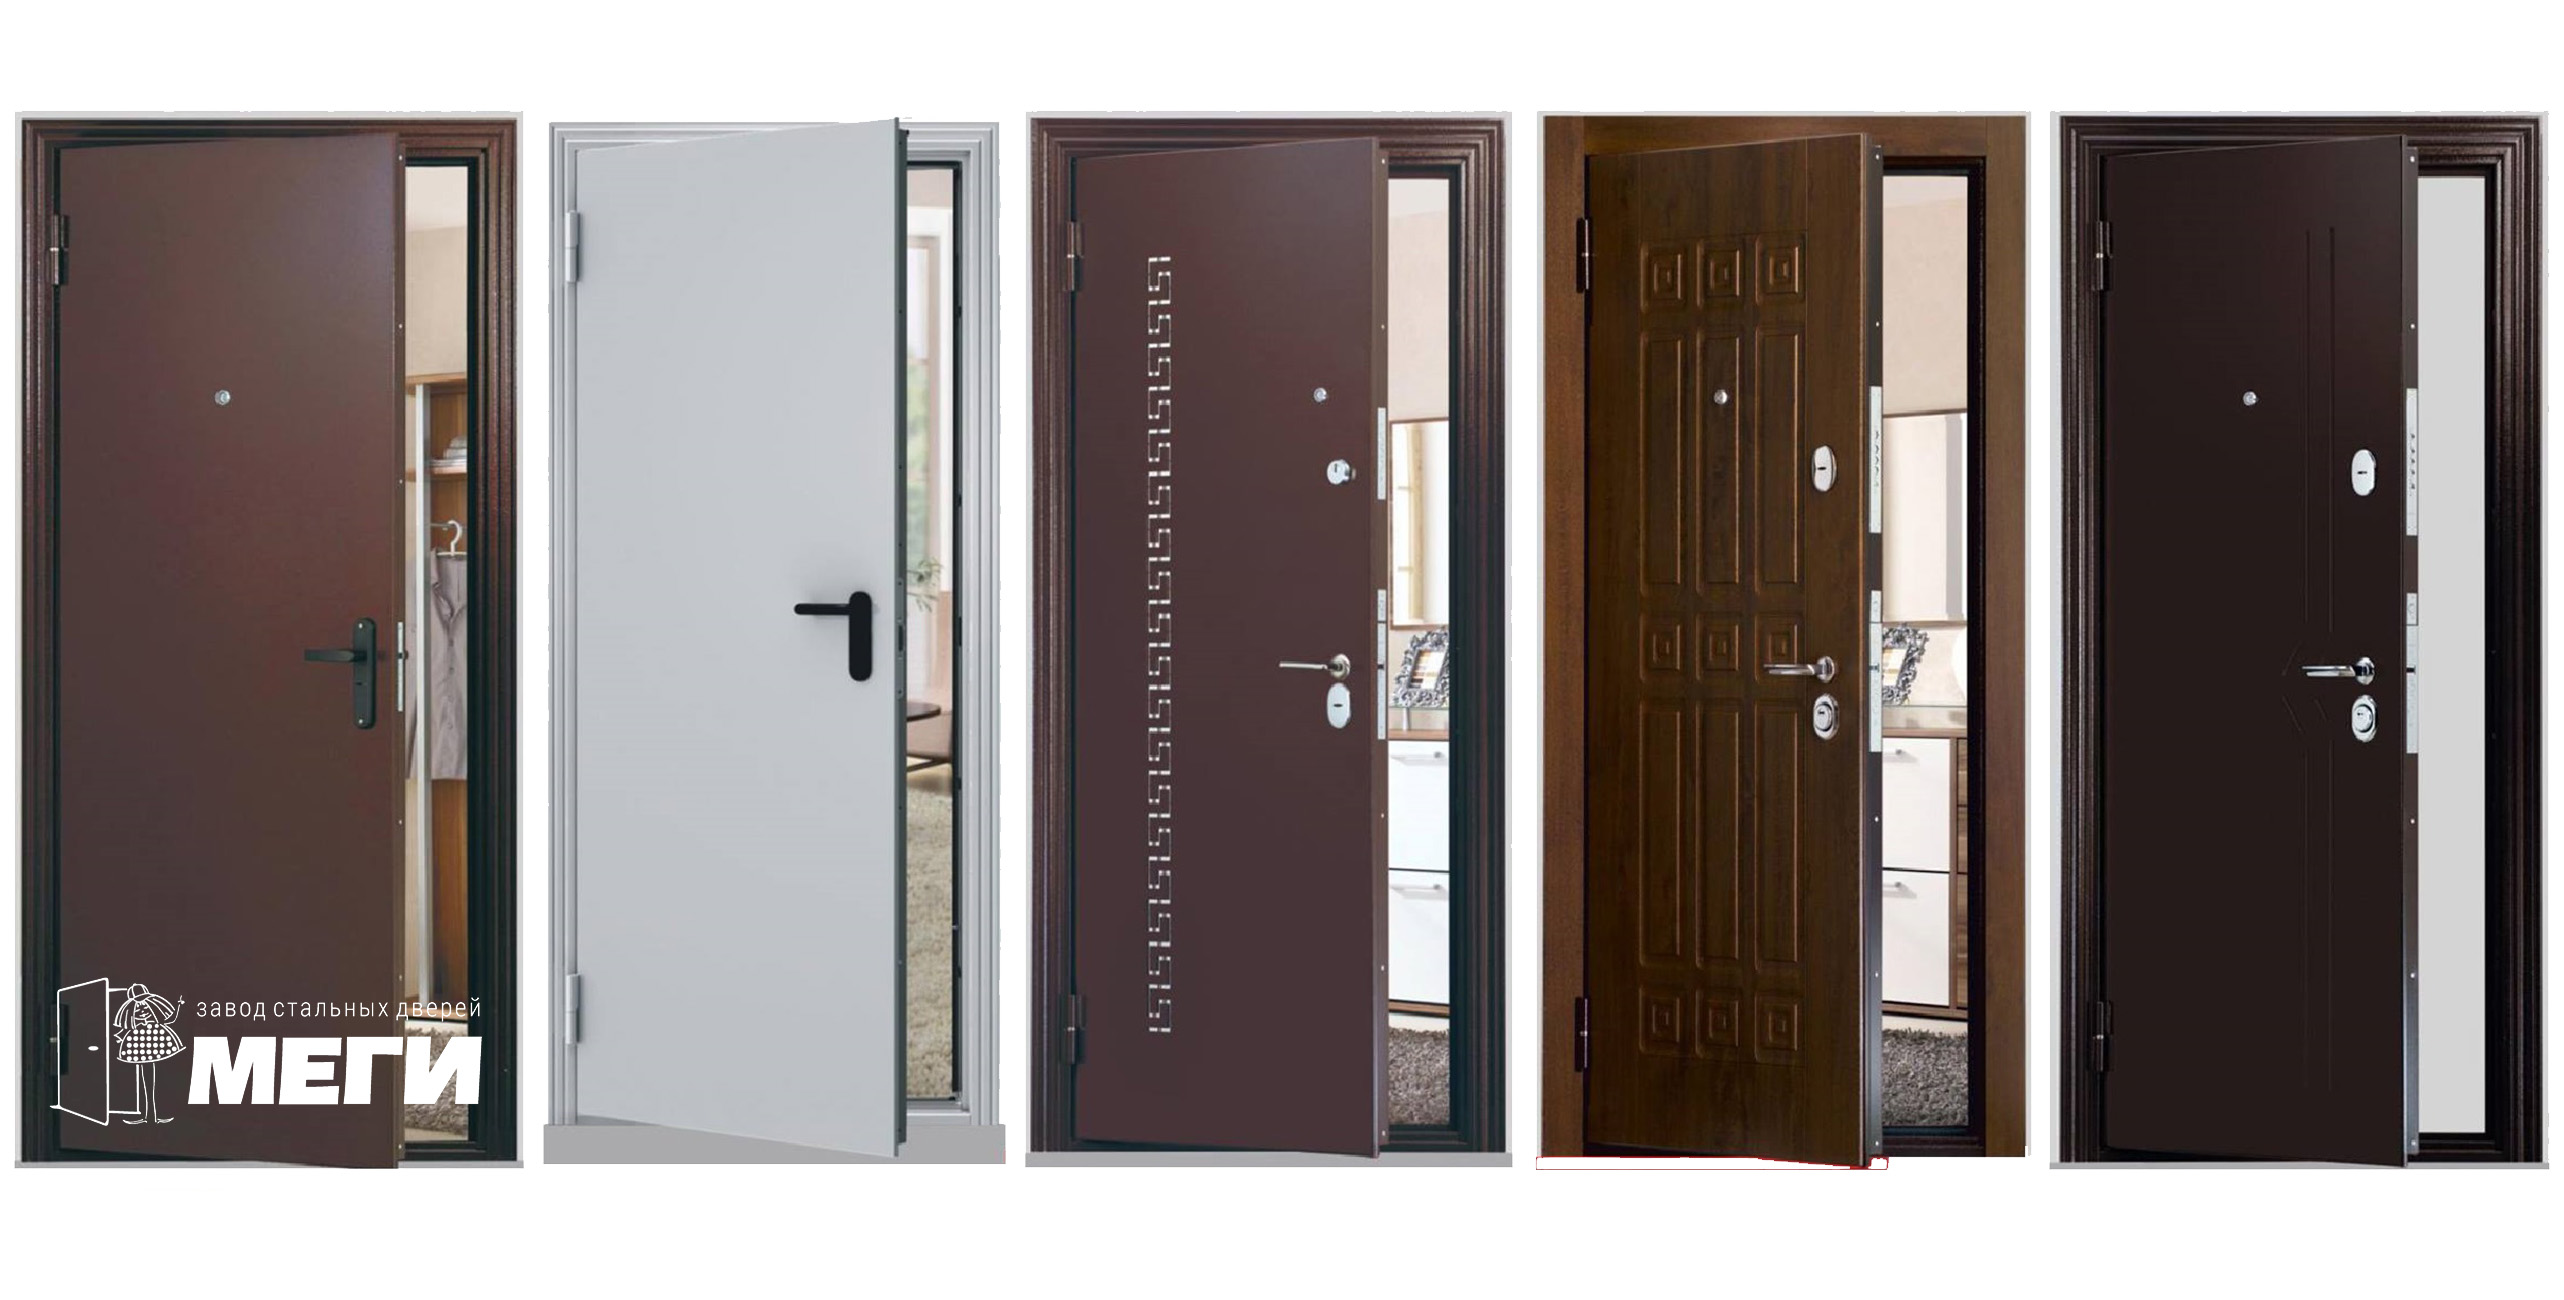 Галерея 2 - изготовление продажа установка металлических дверей в Уфе